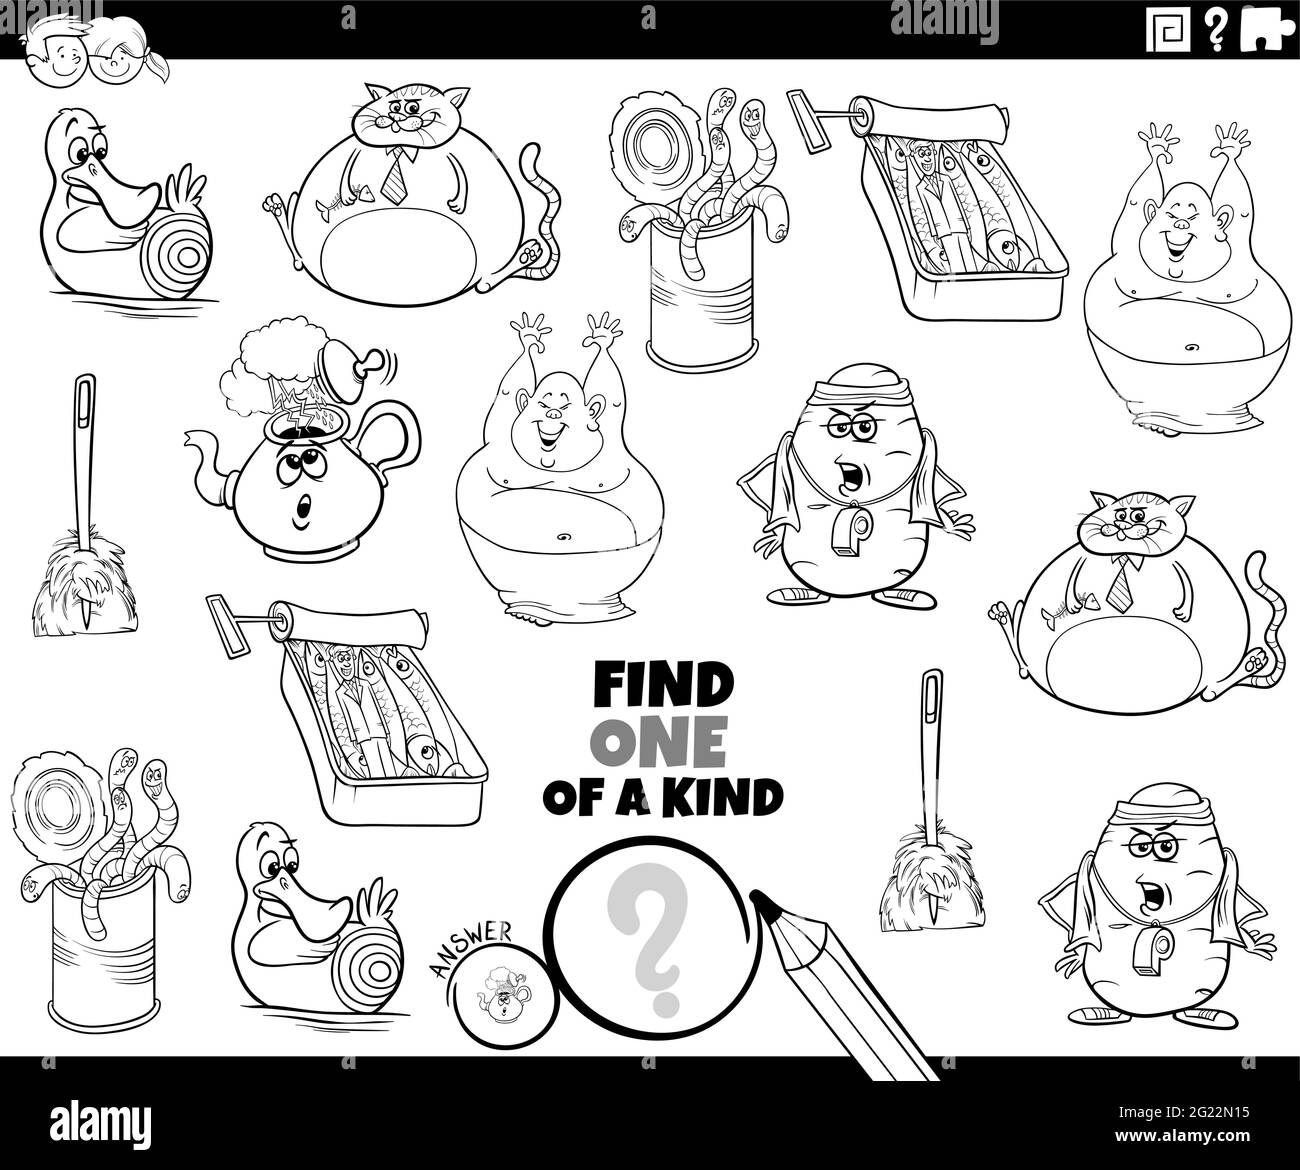 Illustration de dessin animé noir et blanc de Find One of a genre image jeu éducatif avec des personnages de bande dessinée page de livre de coloriage Illustration de Vecteur